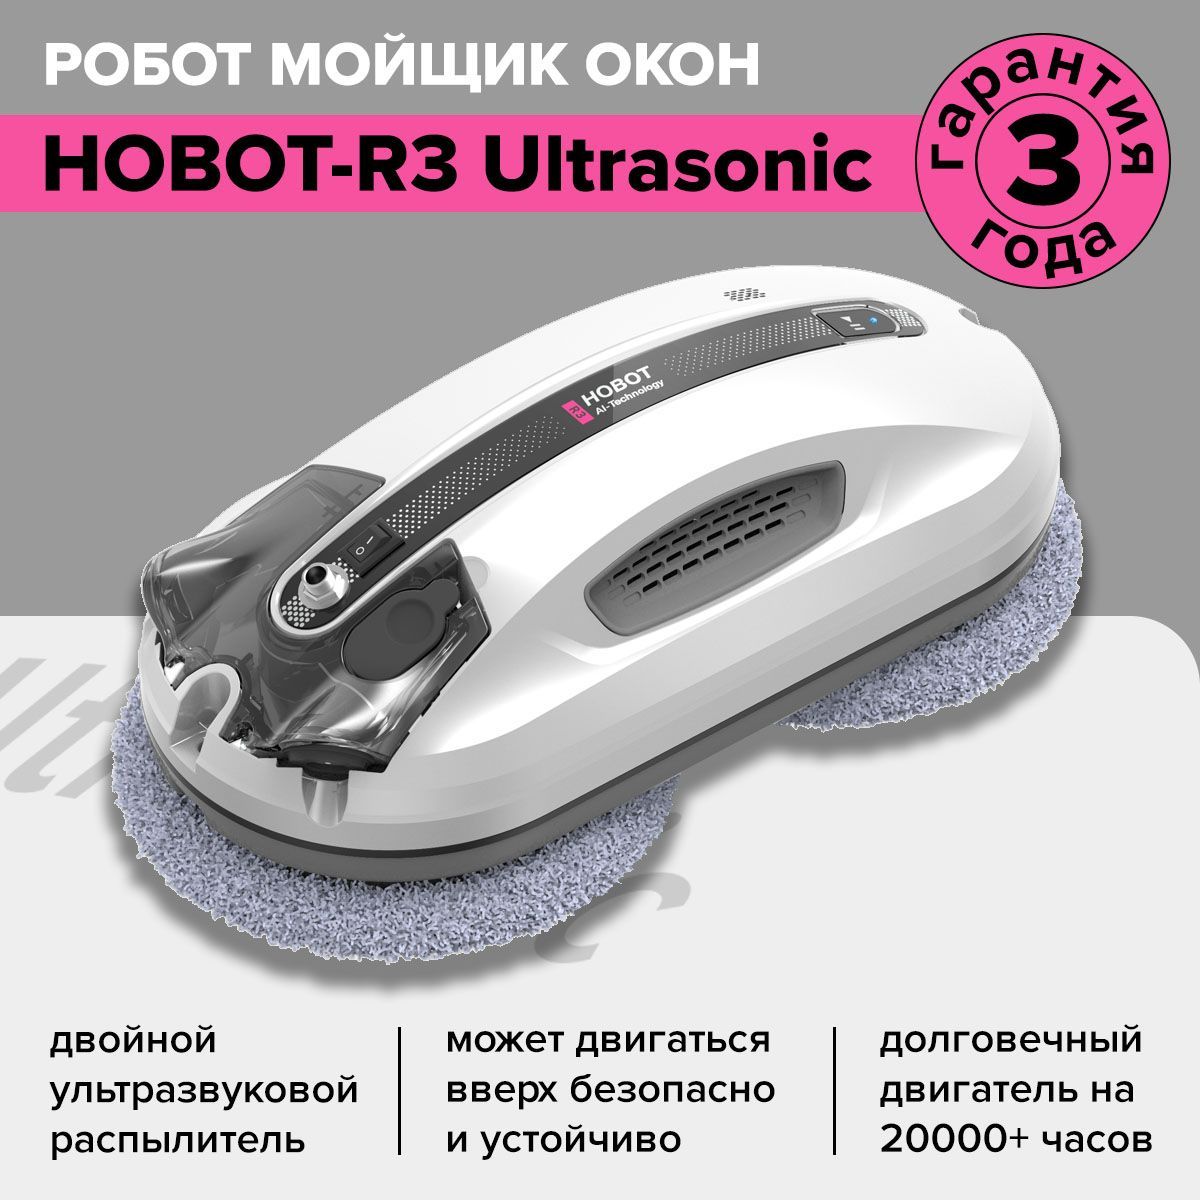 Hobot-r3 Ultrasonic.